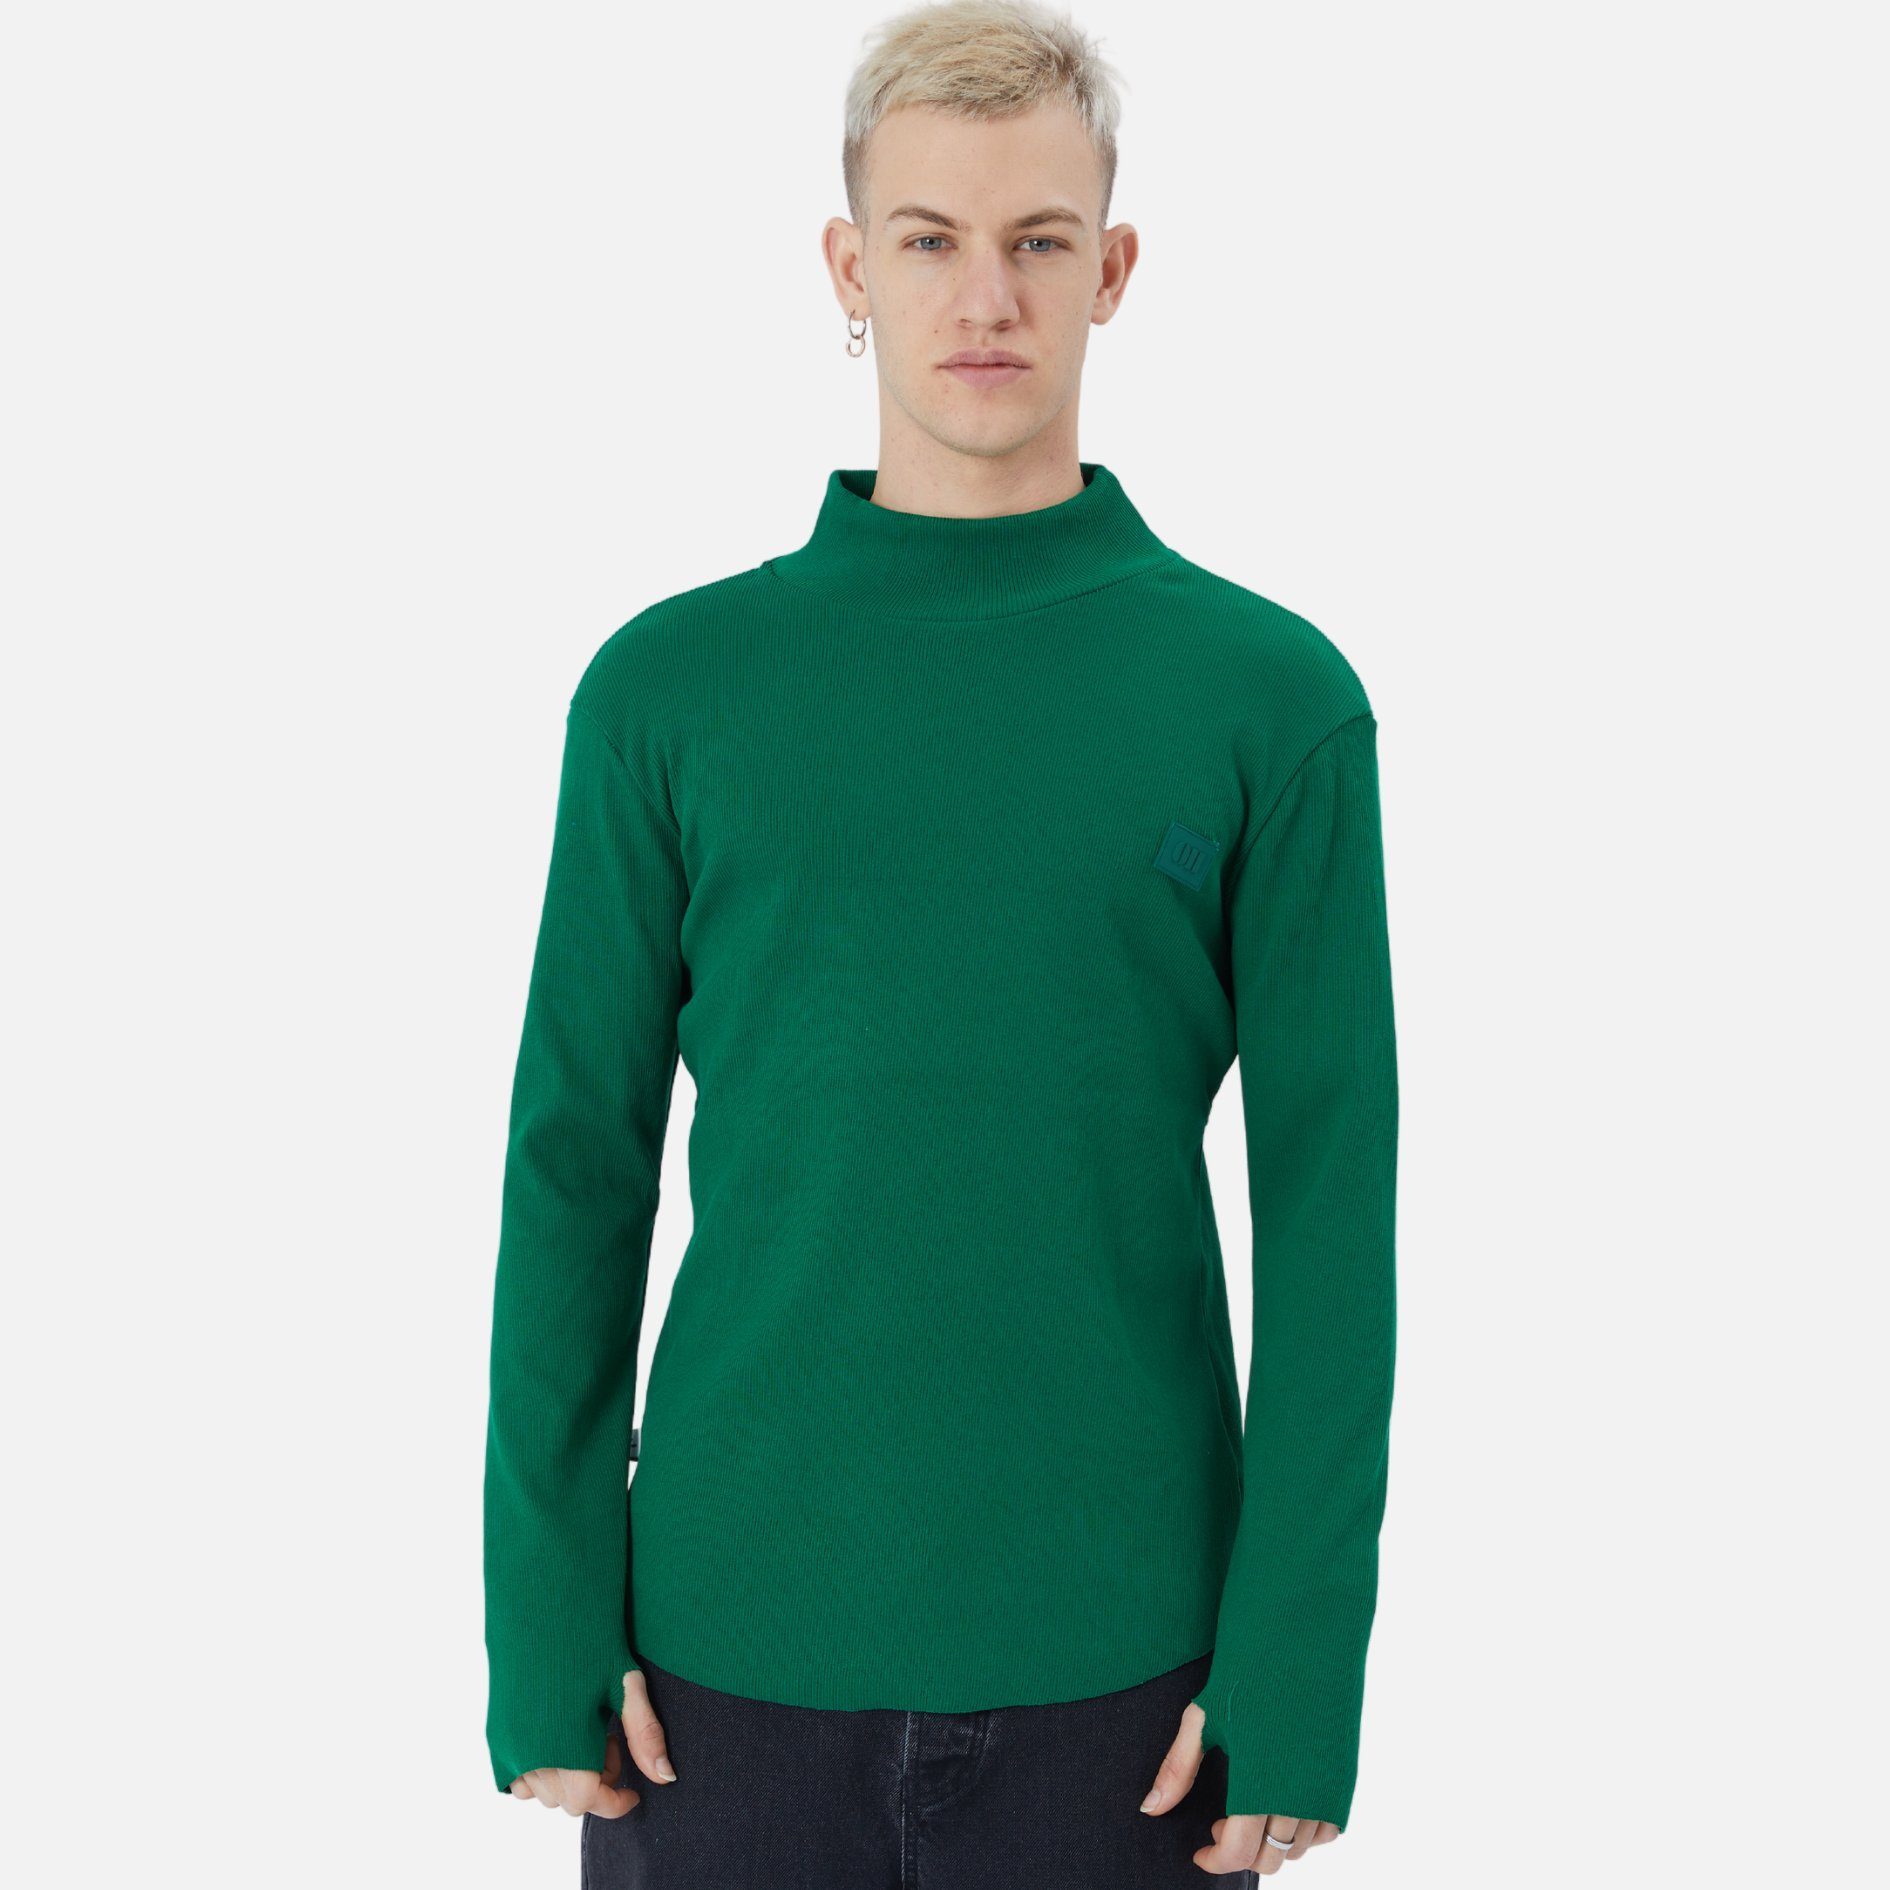 COFI Casuals Sweatshirt Herren Rundhals Sweatshirt Regular Fit Pullover Dunkelgrün